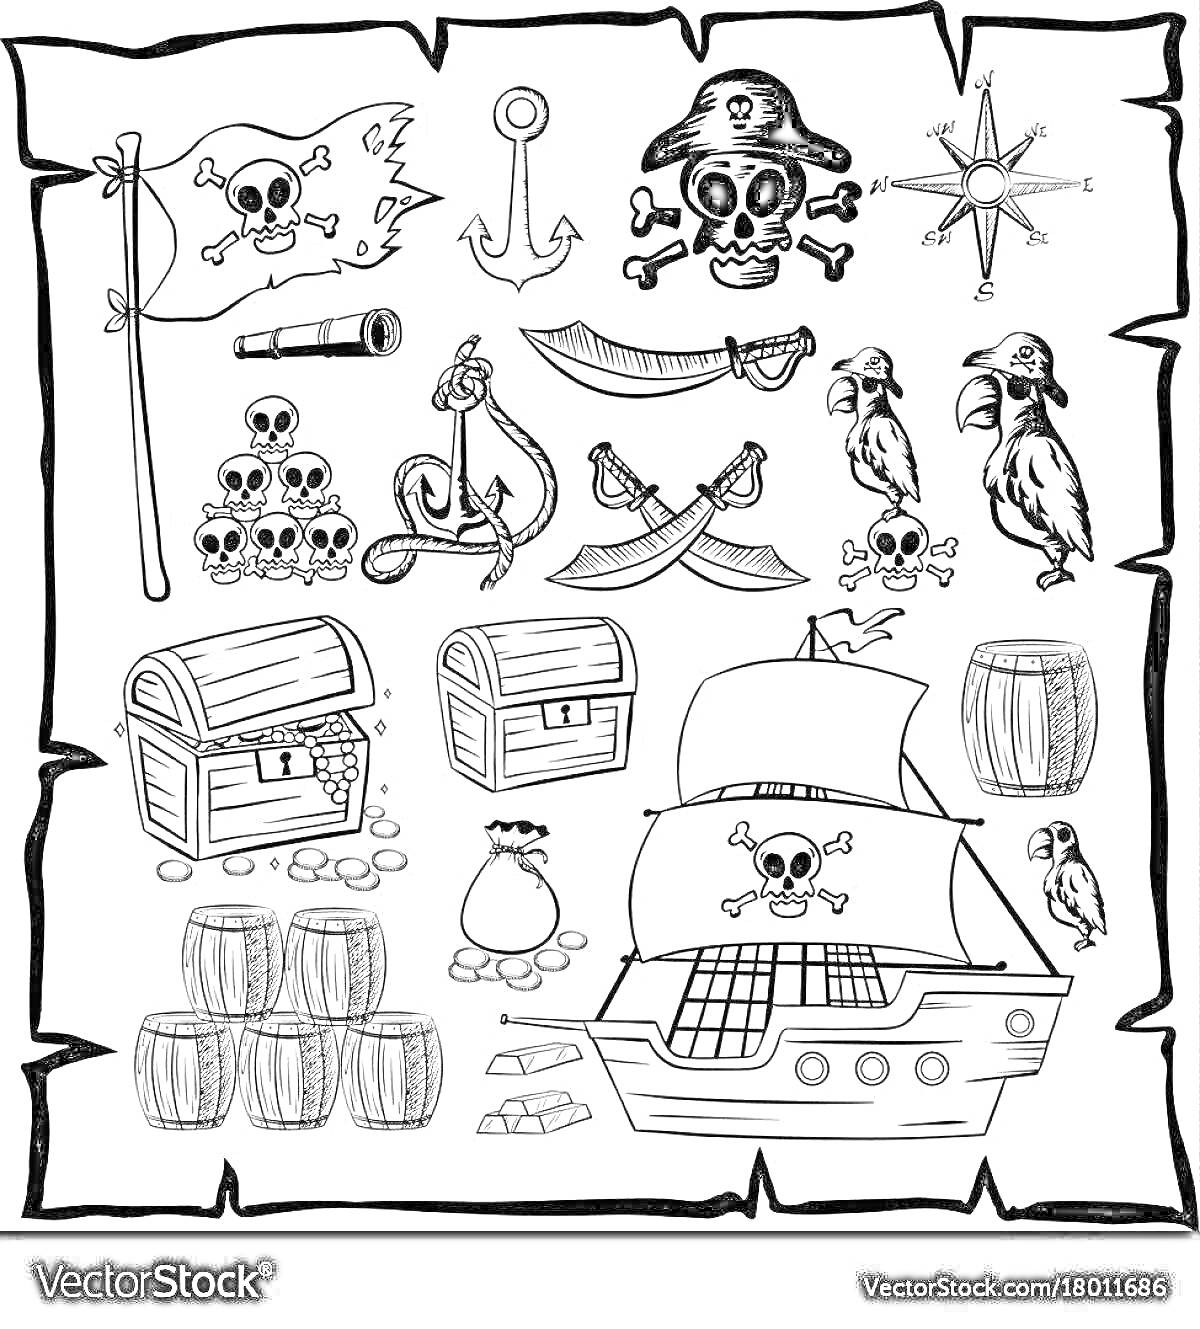 Раскраска карта пиратских сокровищ с черепами и костями, пиратским флагом, якорем, подзорной трубой, компасом, папугами, сундуками, пиратским кораблем и бочками